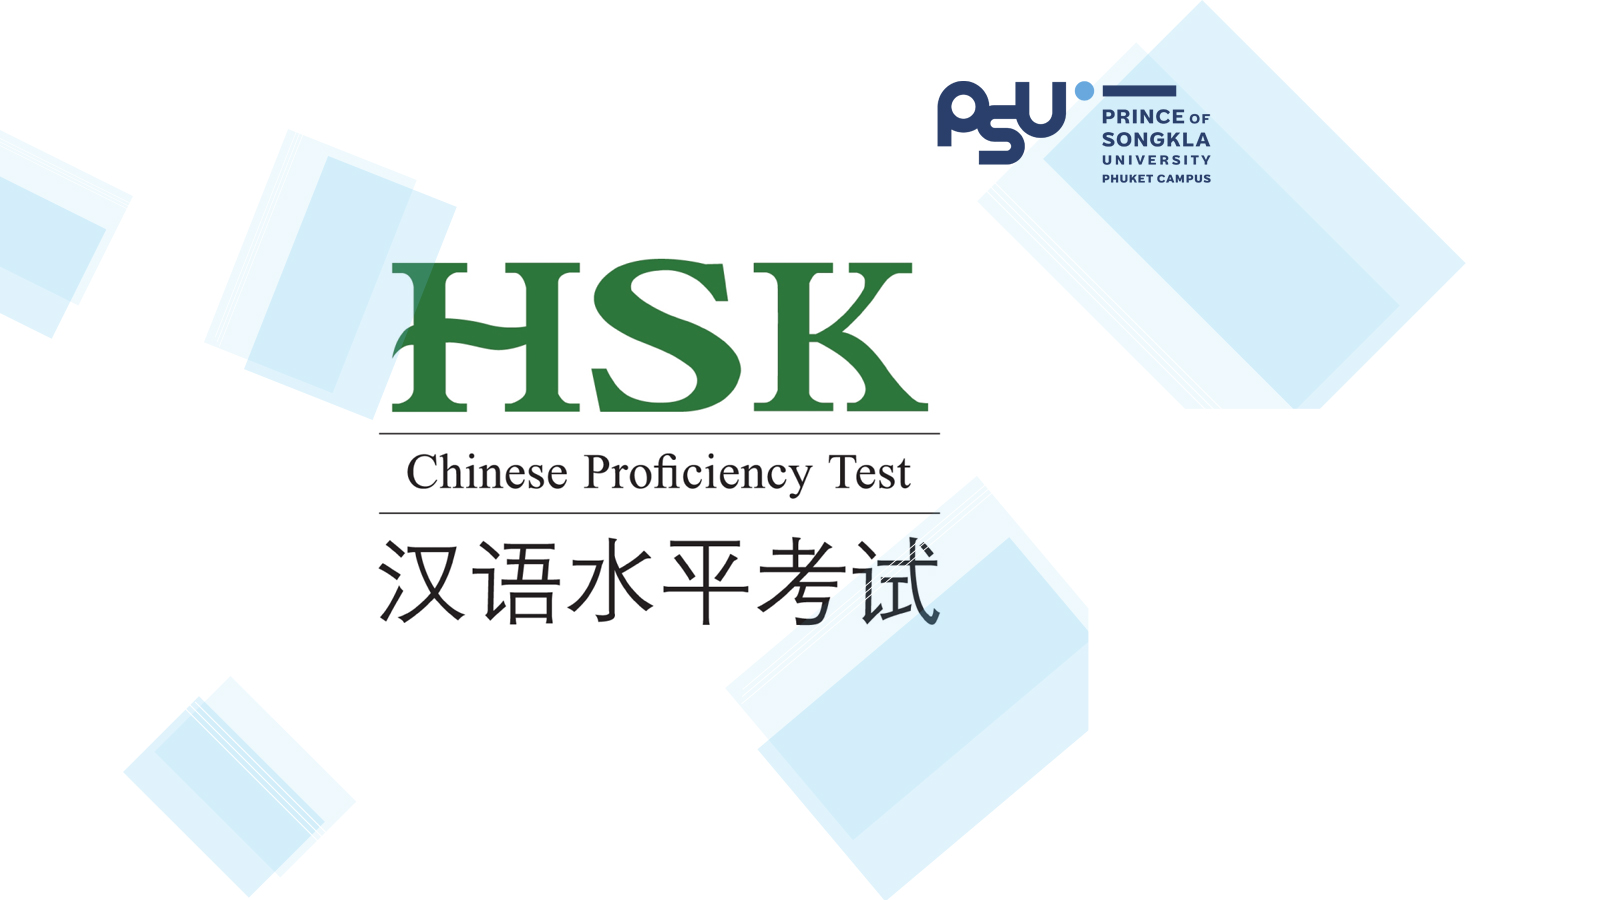 ประกาศรายชื่อผู้มีสิทธิ์สอบวัดระดับความรู้ภาษาจีน (HSK) ครั้งที่ 5 ประจำปี 2563 ในวันเสาร์ที่ 17 ตุลาคม 2563 ณ วิทยาเขตภูเก็ต และวิทยาเขตตรัง